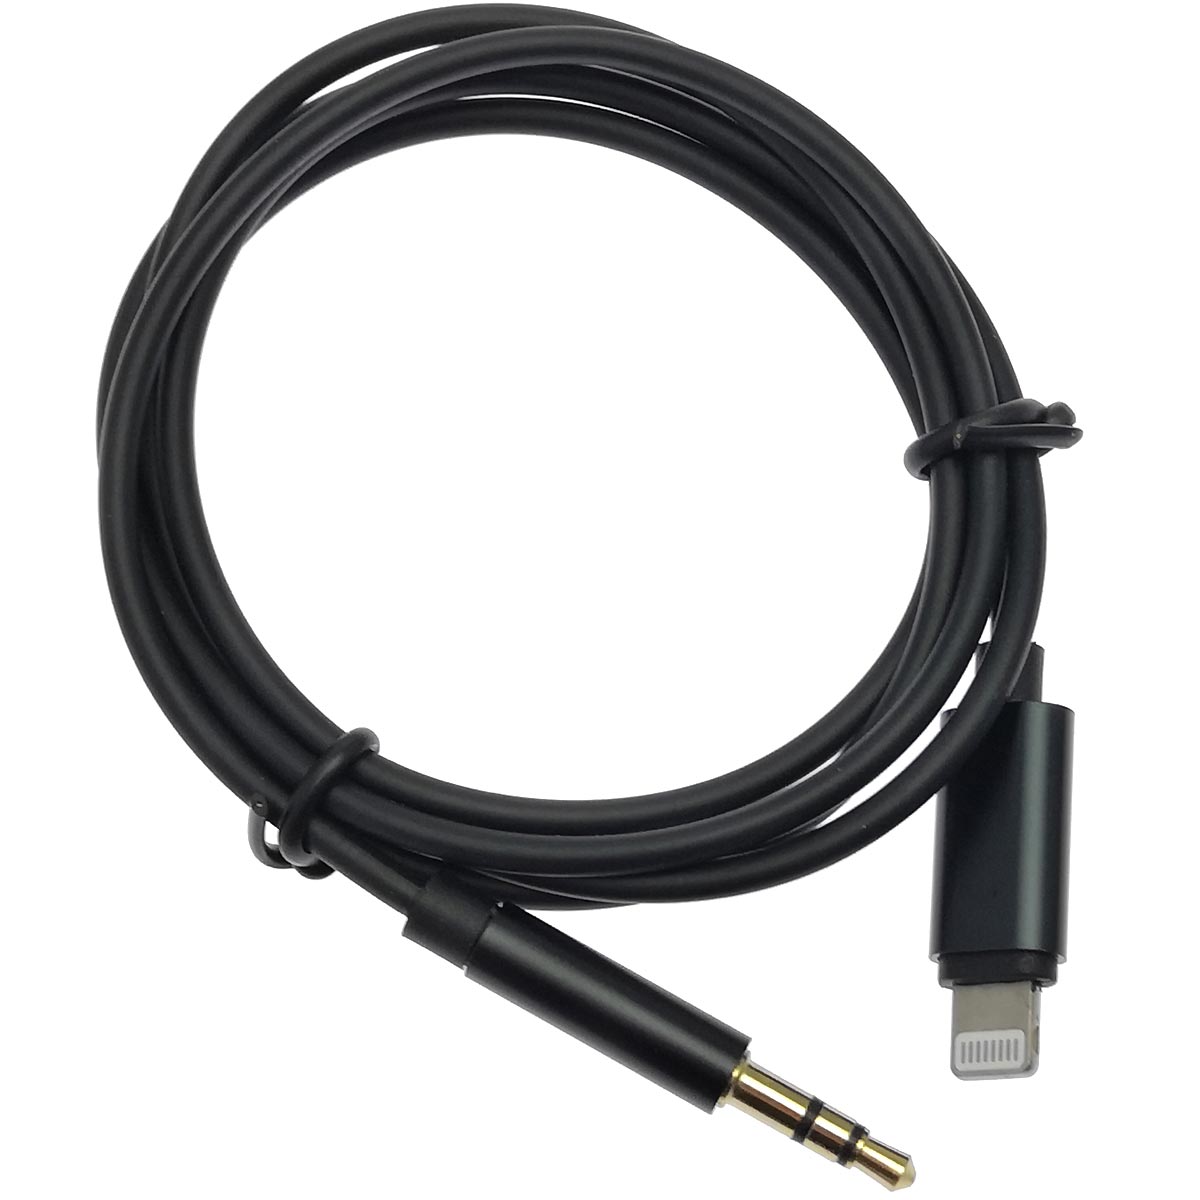 Аудио кабель, переходник JH-023 (FLD-023) Lightning 8-pin на AUX Jack 3.5 mm, длина 1 метр, цвет черный